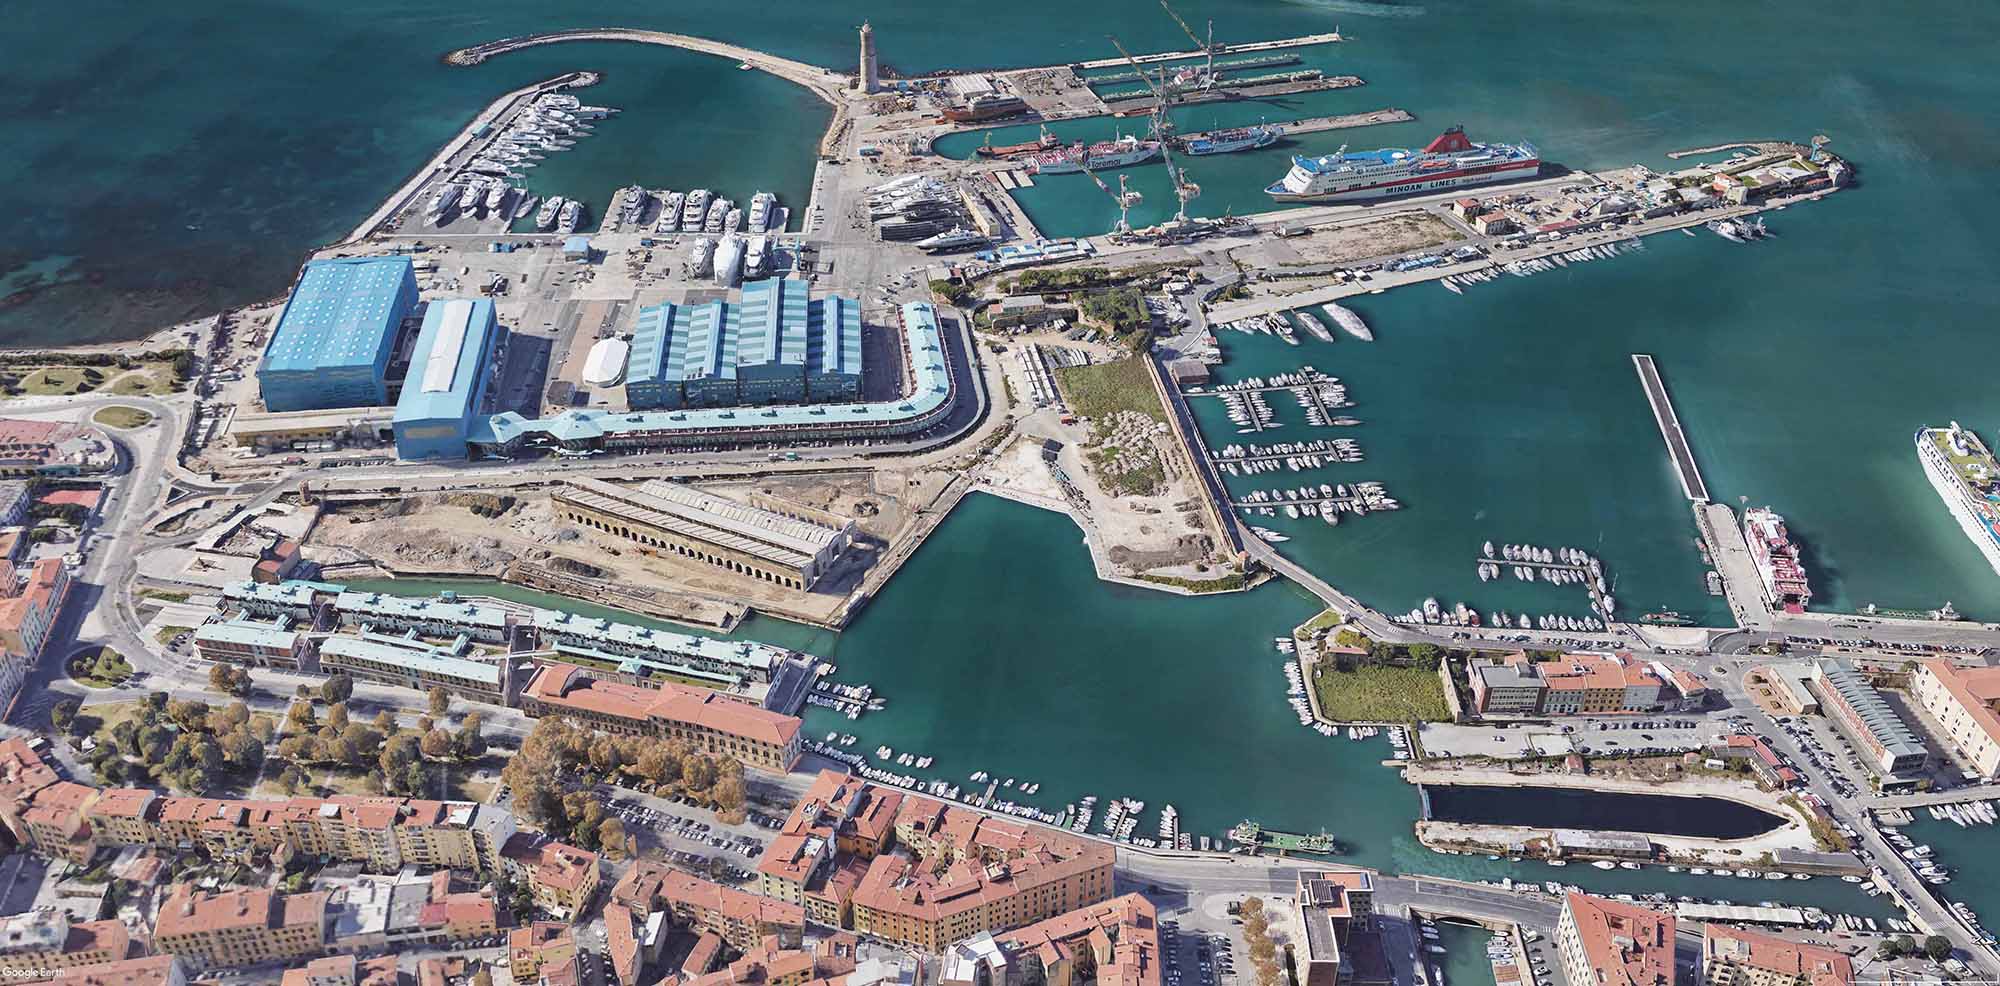 Porta a Mare: the New Face of Livorno toward the Sea